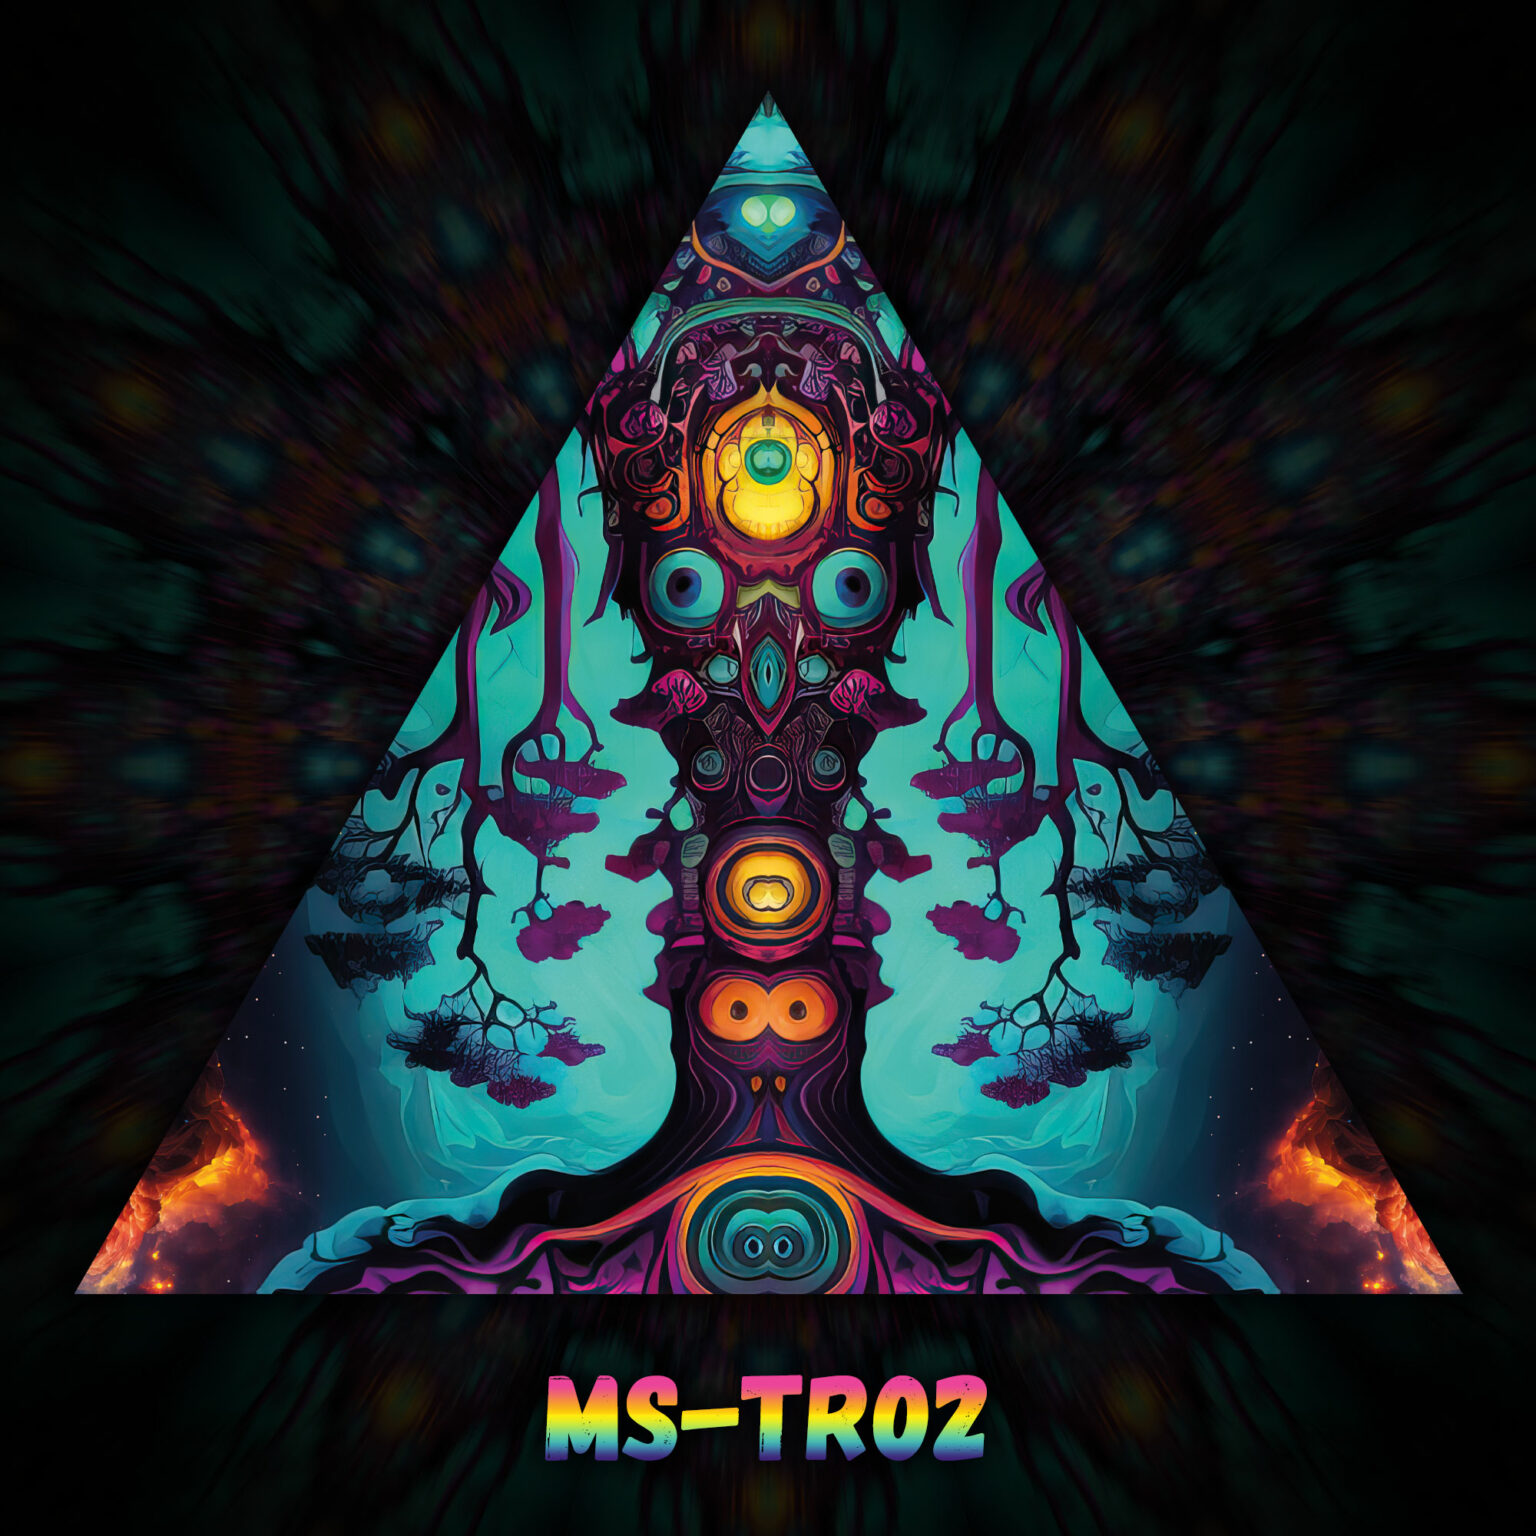 Mystic Spores - MS-TR02 - UV-Triangle - Design Preview